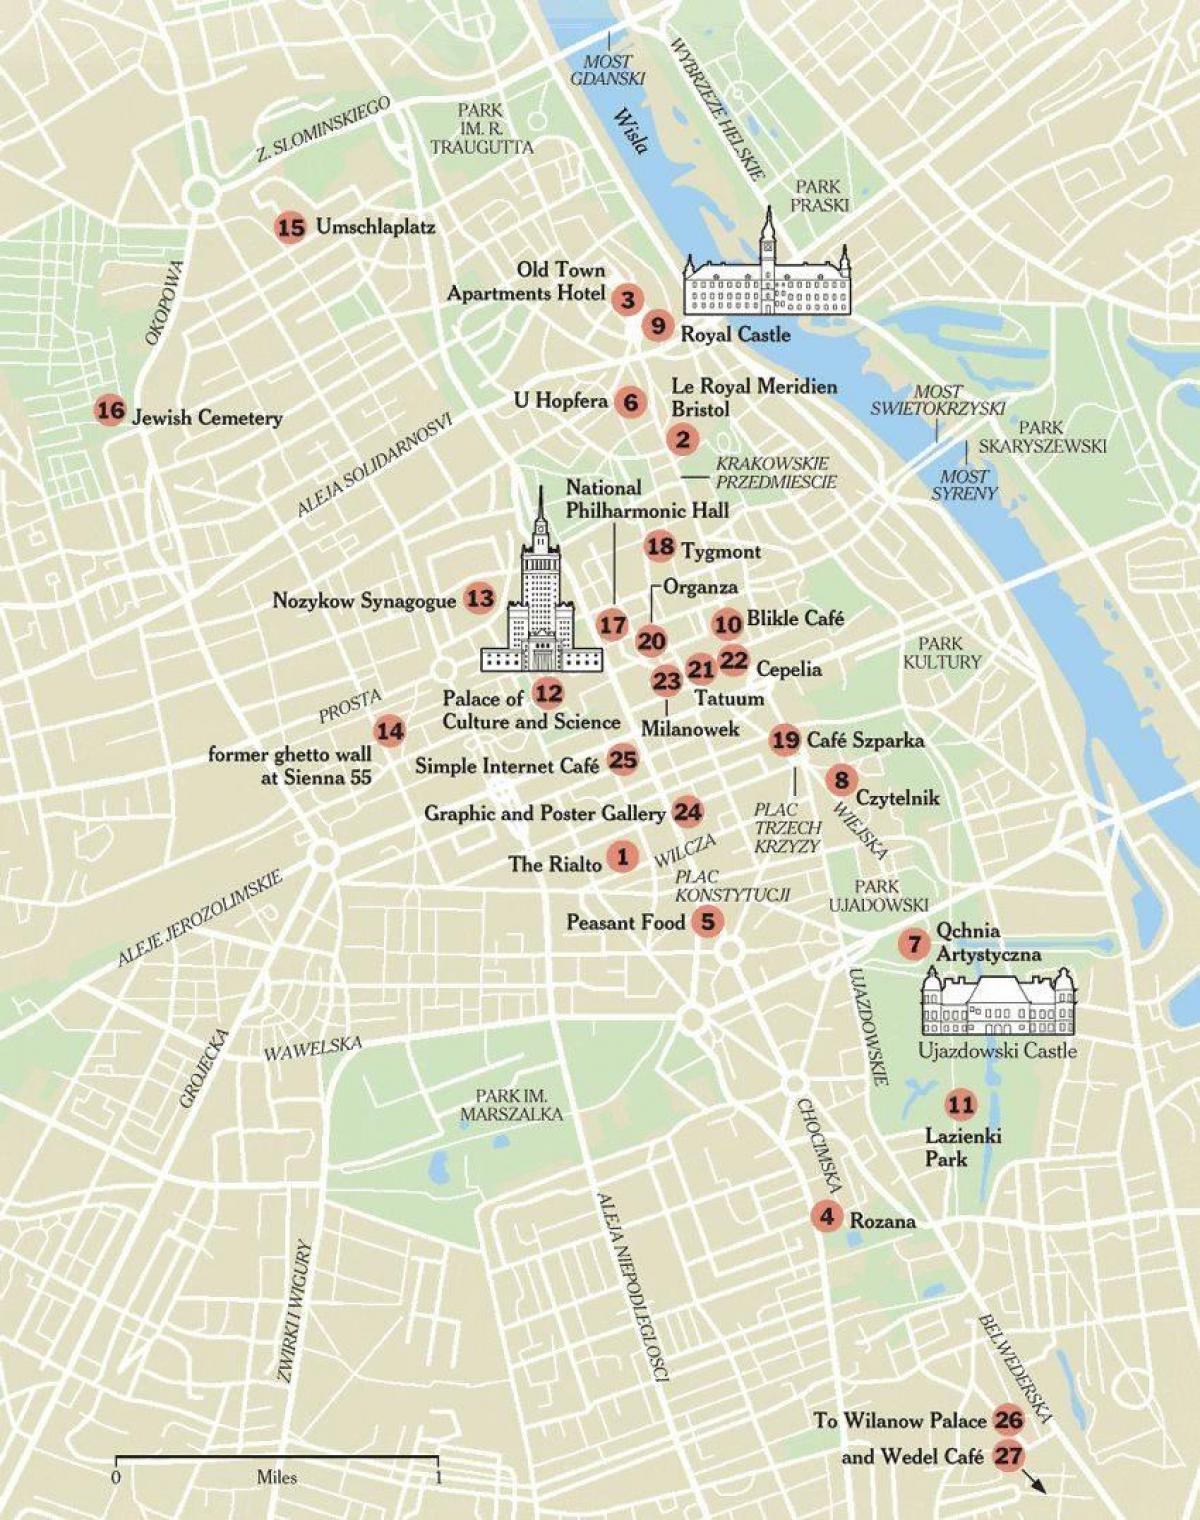 mappa di Varsavia, con attrazioni turistiche